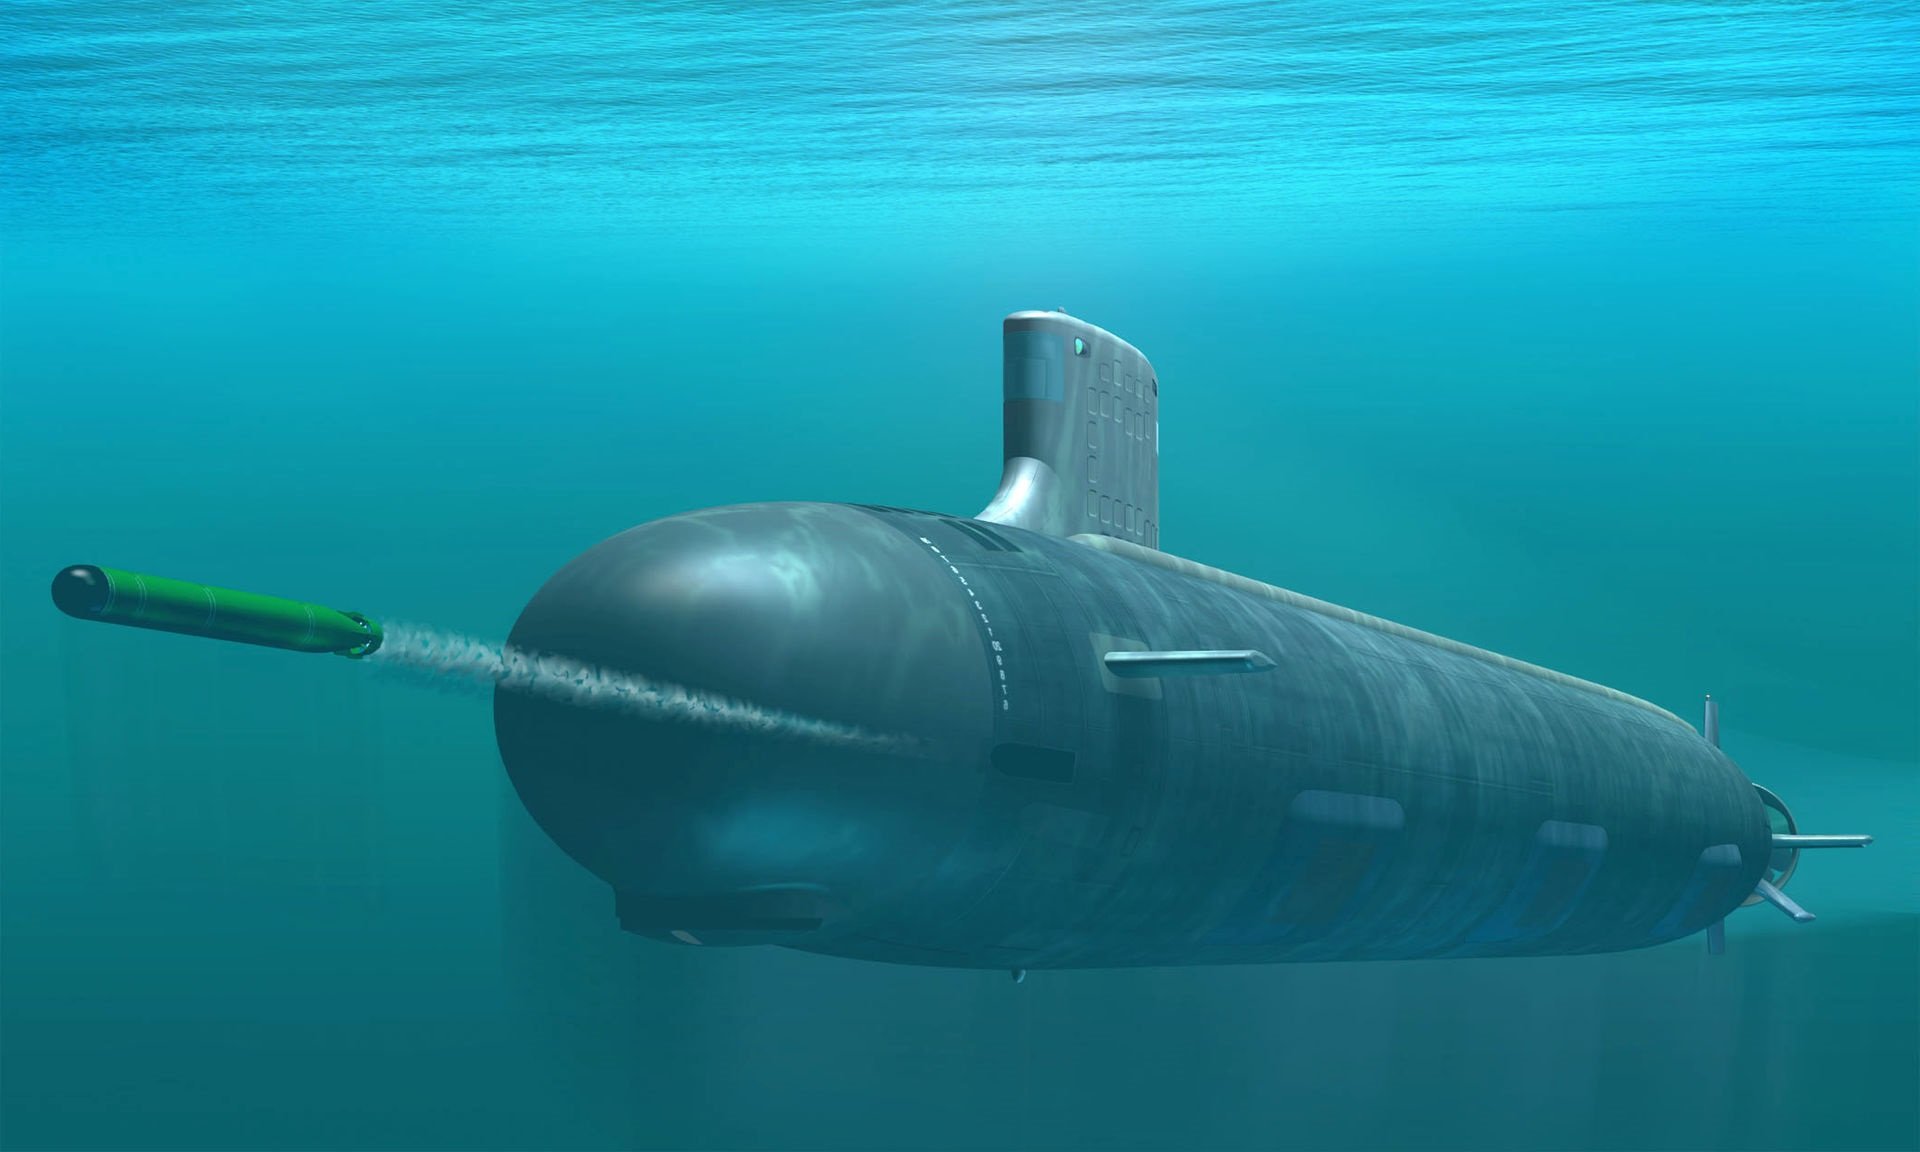 us navy seawolf class submarine weigh